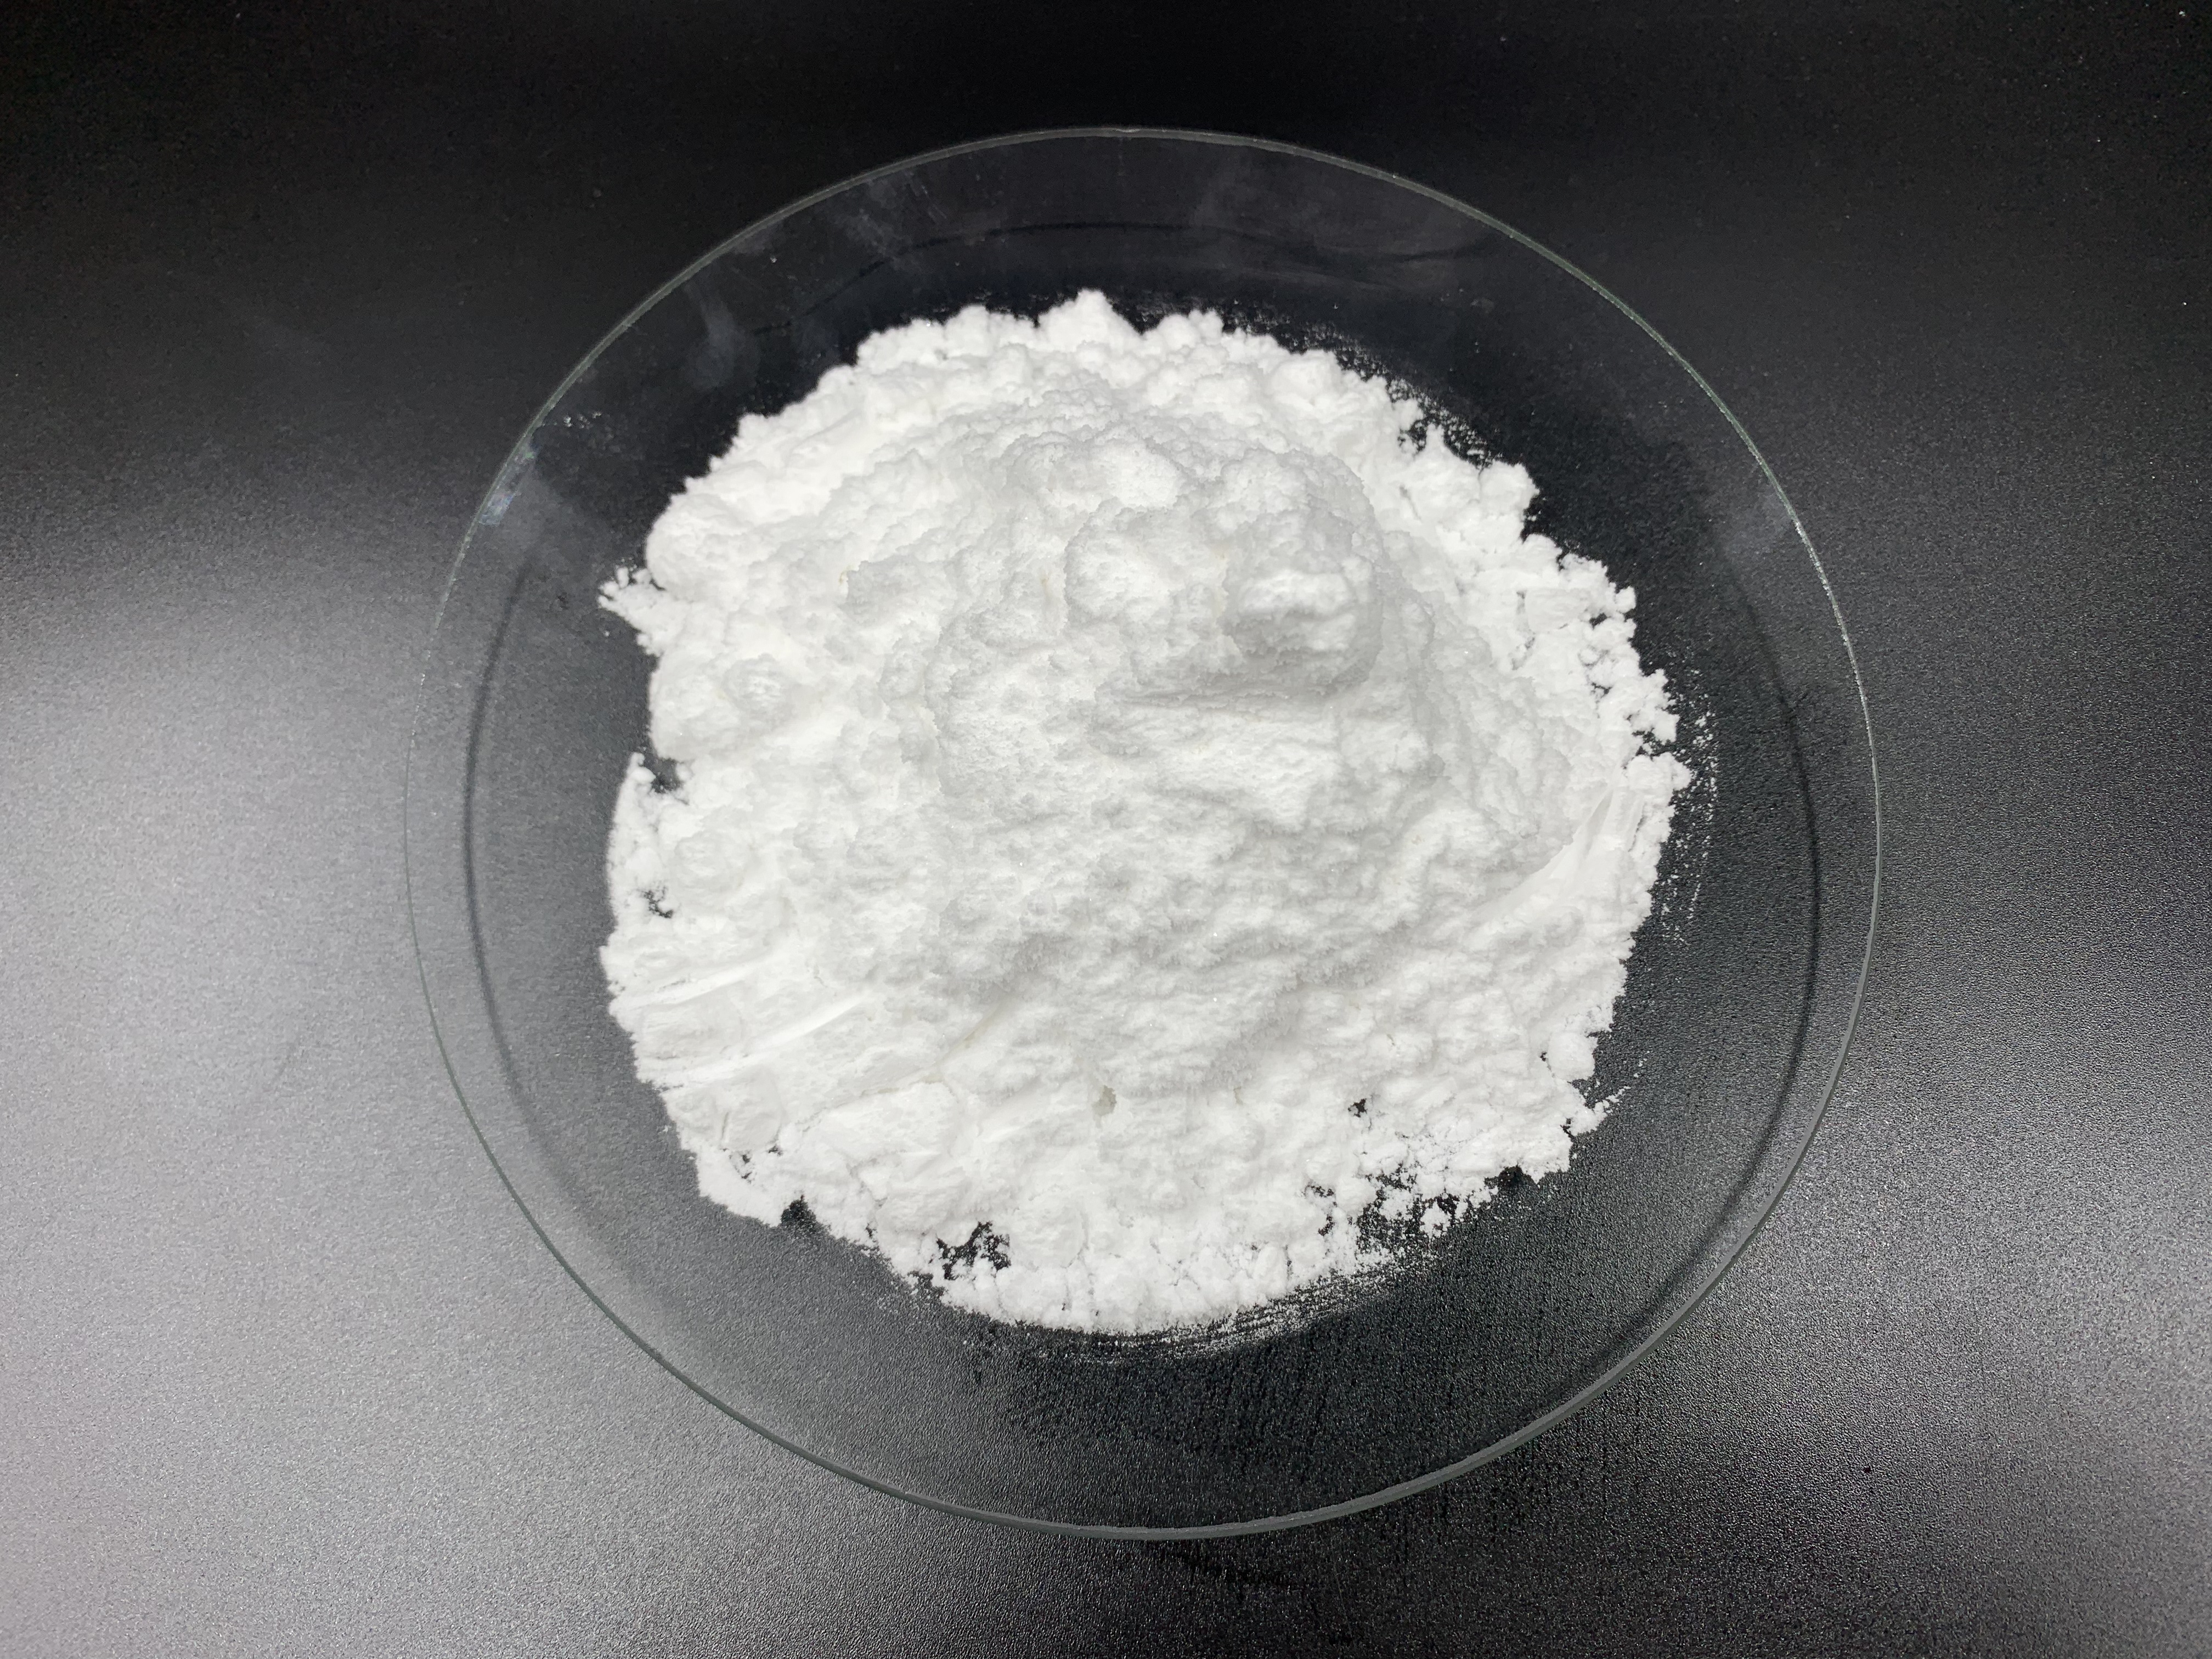 High Purity API DMC CAS 553-63-9 Dimethocaine Hydrochloride Powder